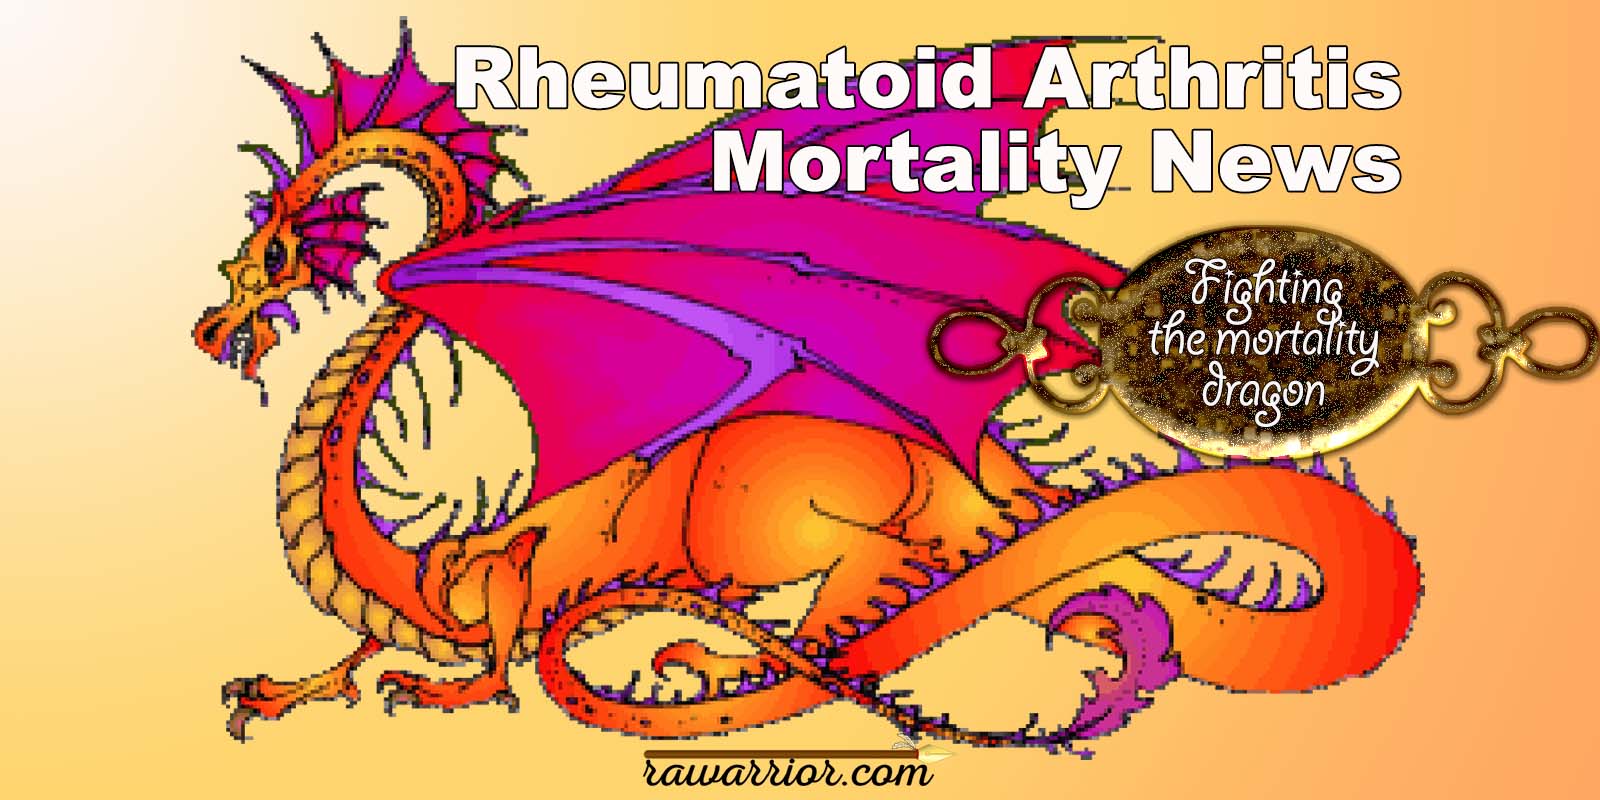 Rheumatoid Arthritis Mortality